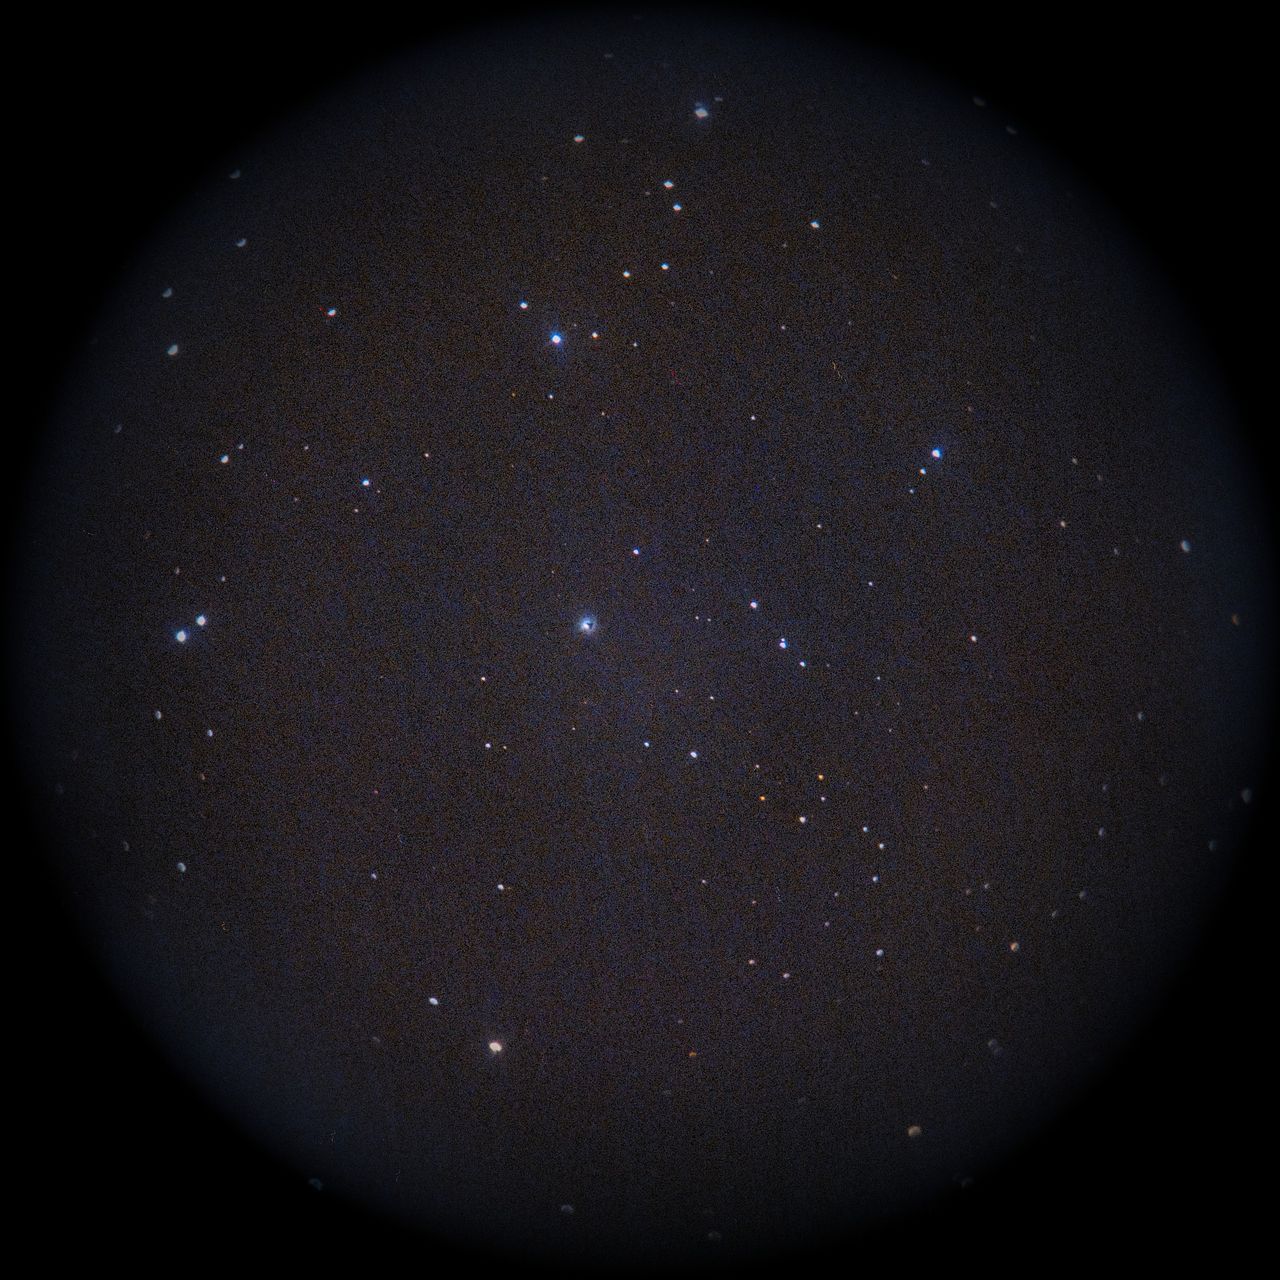 Image of NGC1999